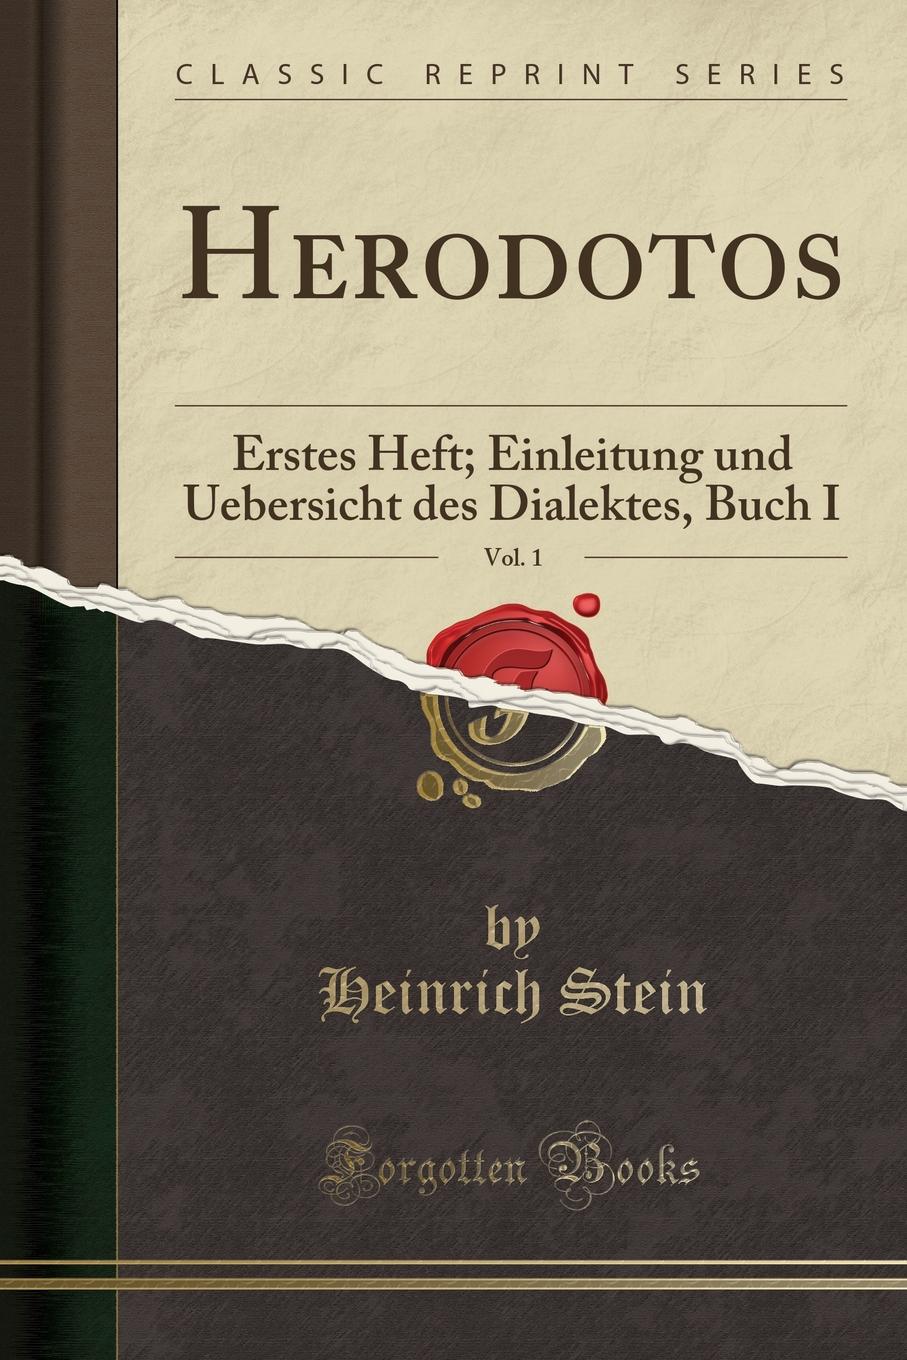 Herodotos, Vol. 1. Erstes Heft; Einleitung und Uebersicht des Dialektes, Buch I (Classic Reprint)